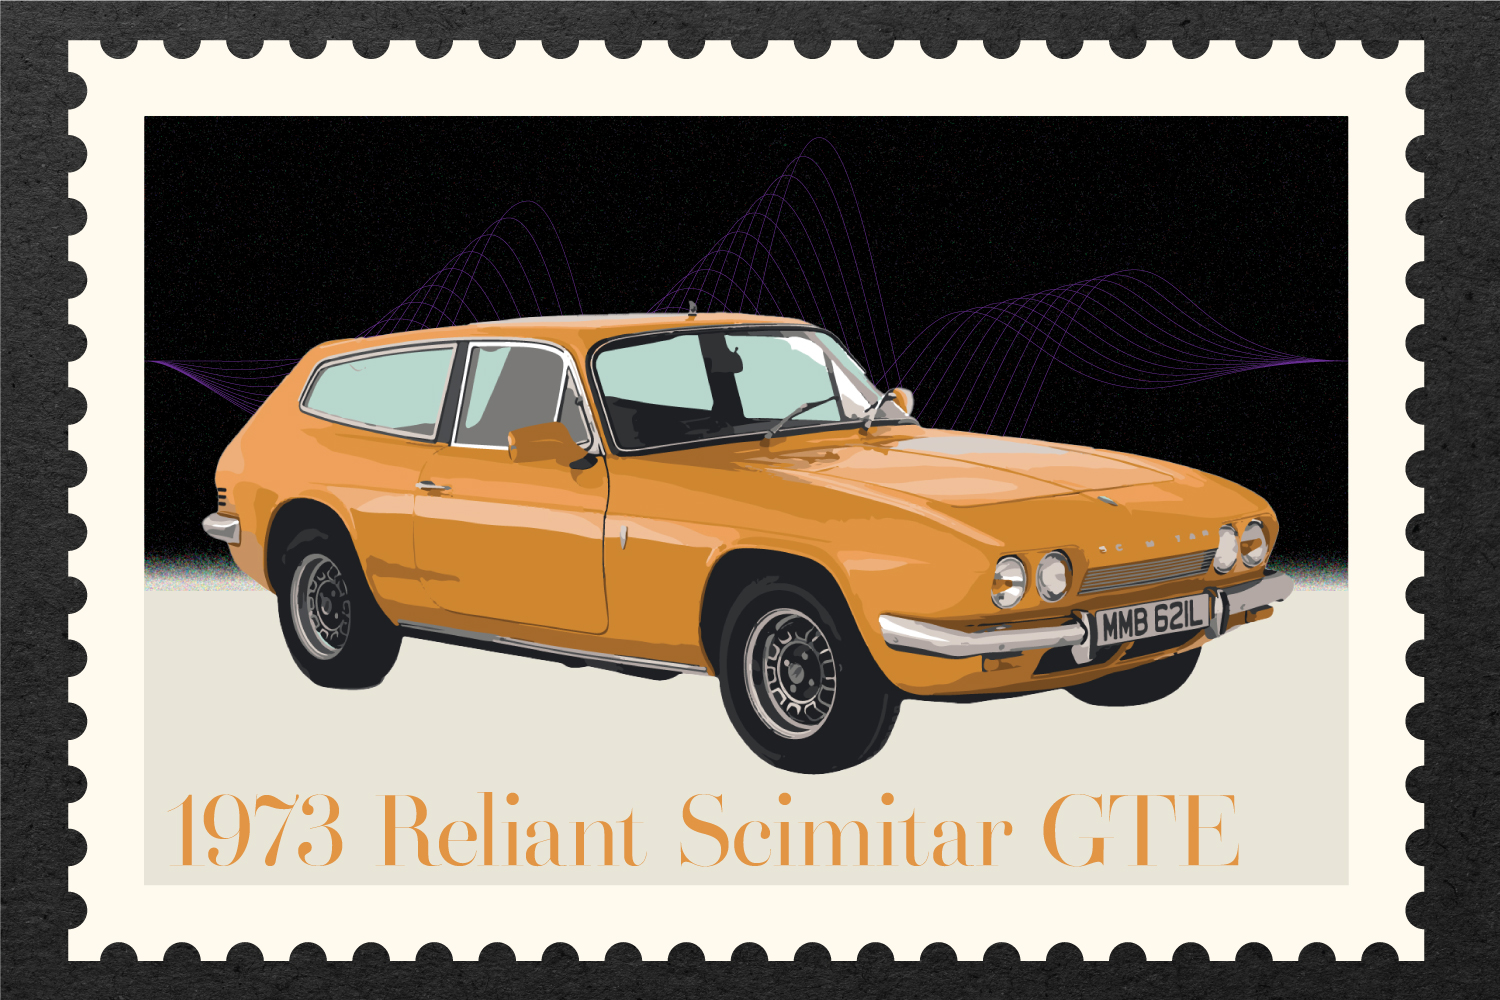 1973 Reliant Scimitar GTE